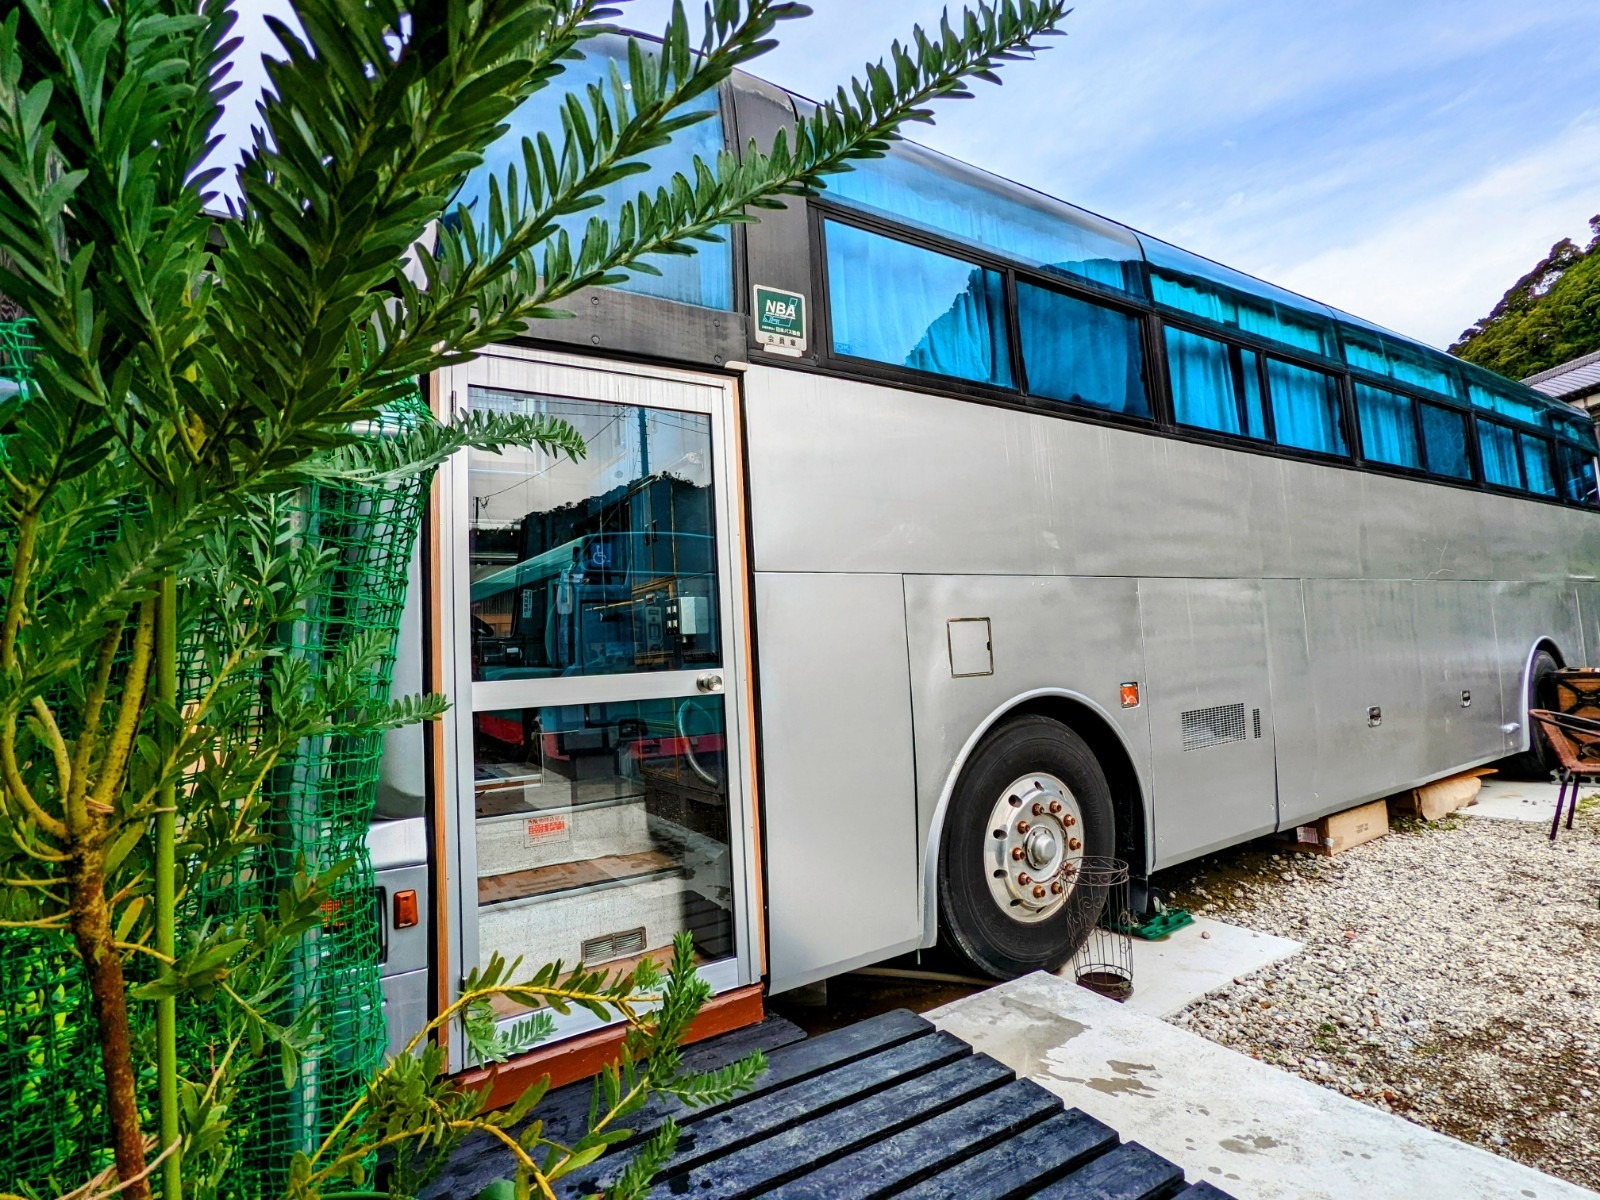 【1日1組限定宿泊】広々BBQスペース付き♪バスの中のテントで寝る、新しいキャンプ体験!